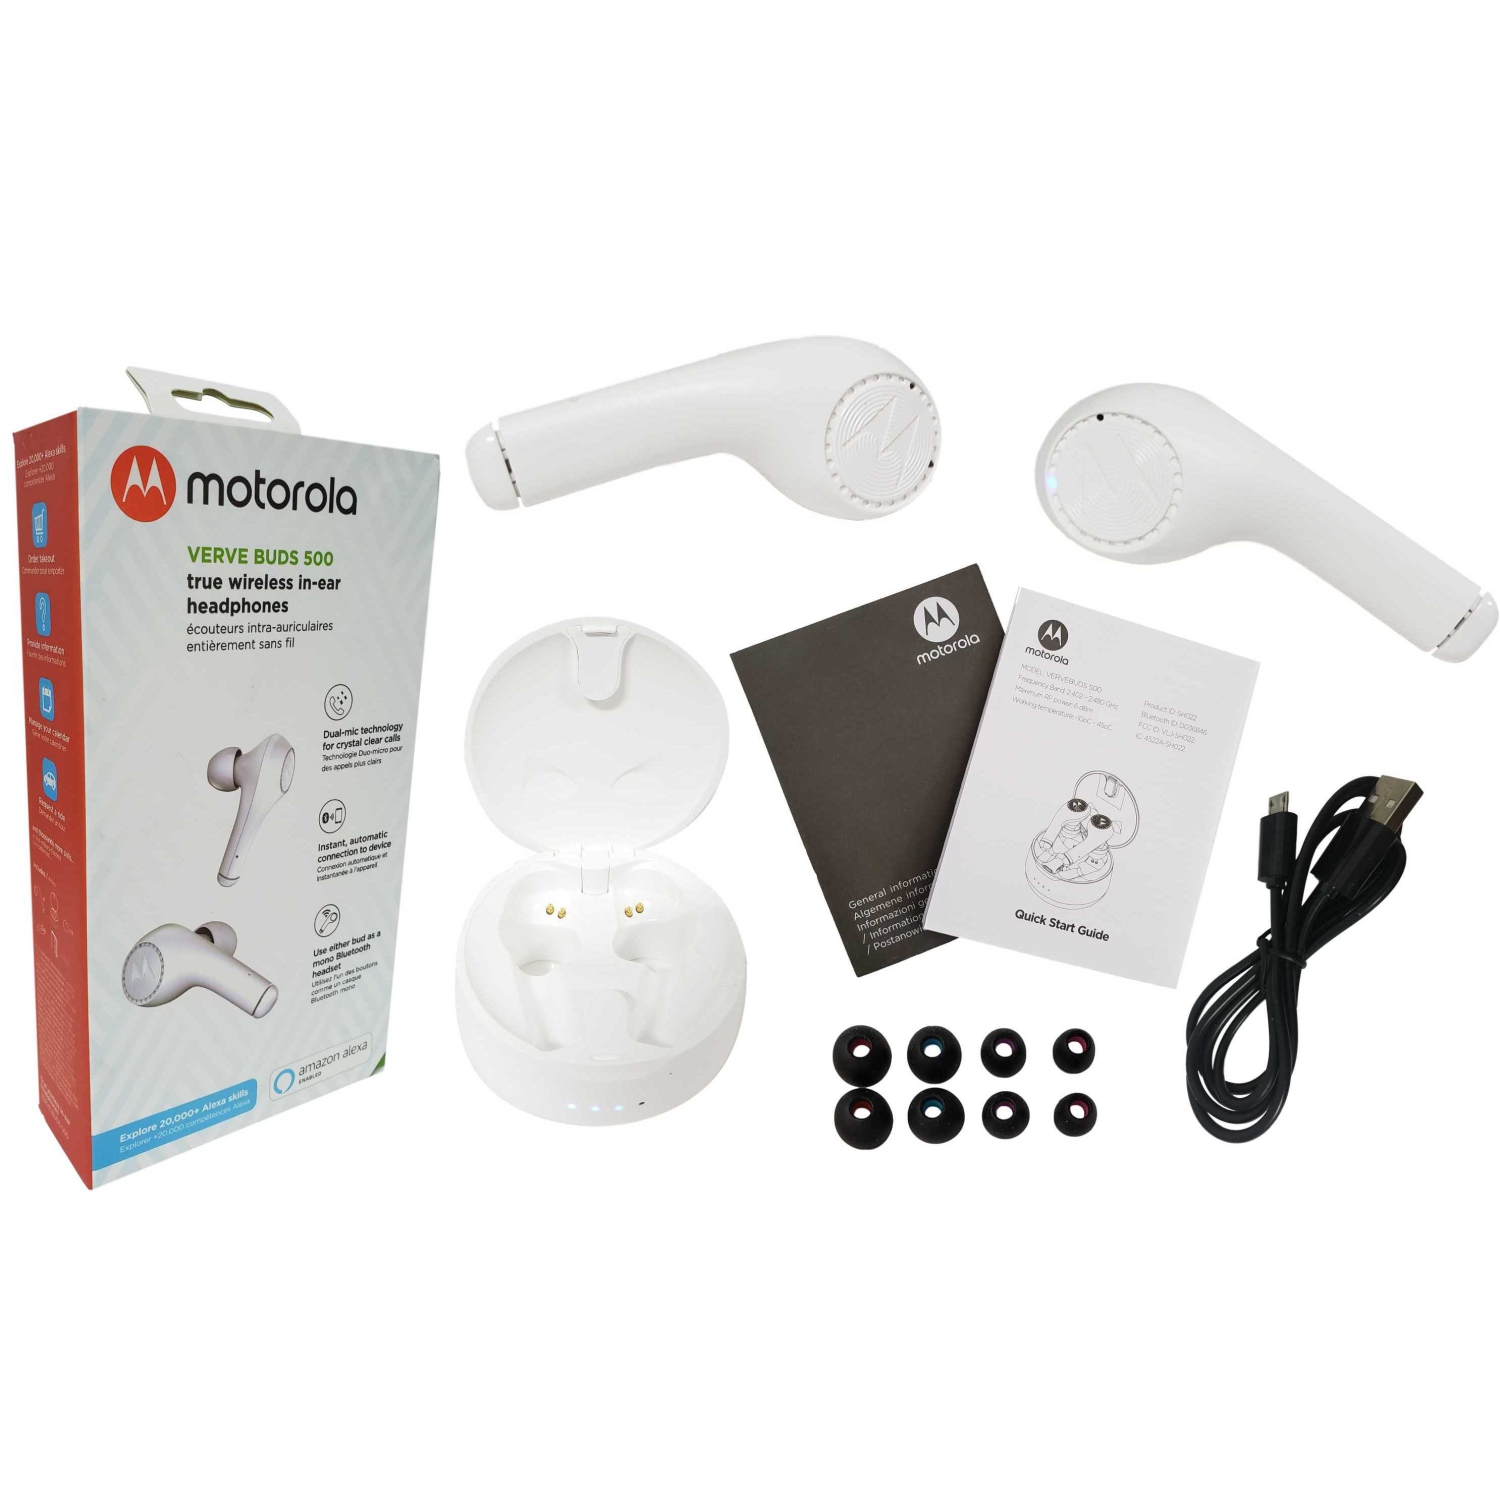 Motorola Verve Buds 500 True Wireless Bluetooth in-Ear Headphones Ear Pods - White - Open Box